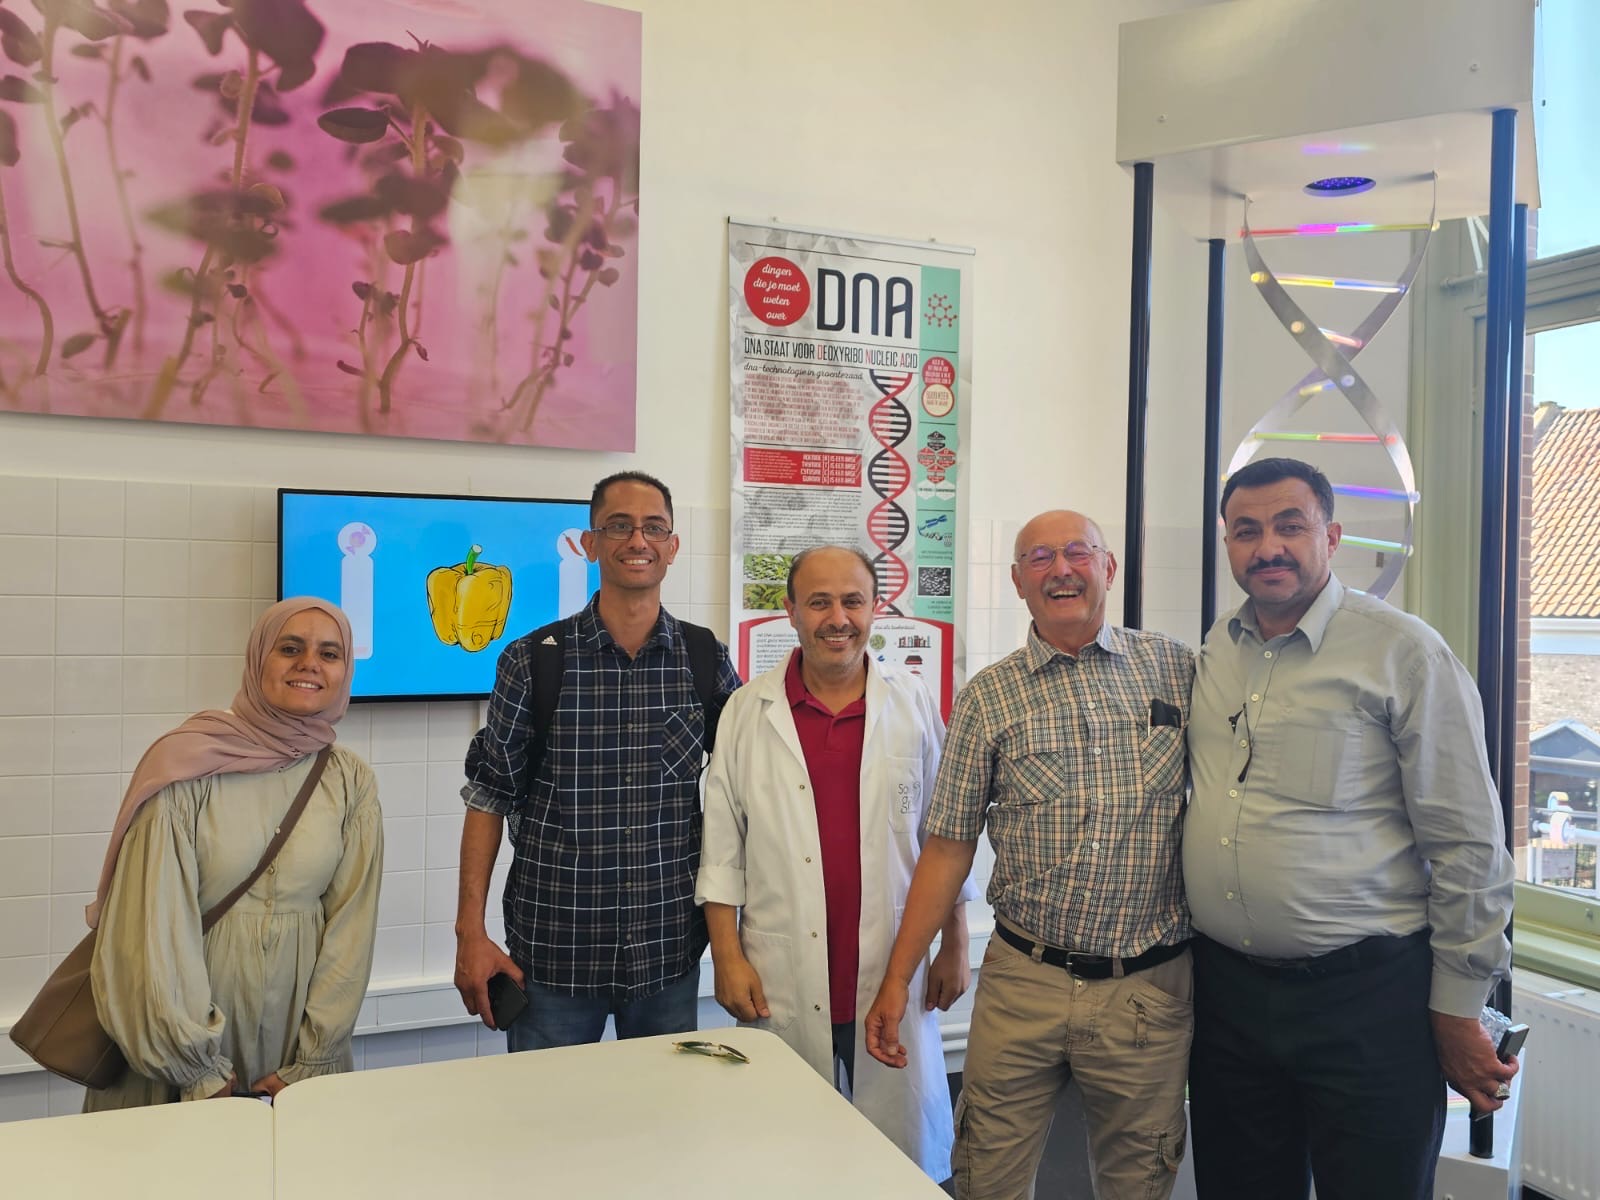 أعمال "عمان العربية" تشارك في زيارة عمل لمملكة هولندا للاطلاع على تجارب ادارية وتكنولوجية وتعاونية ناجحة7